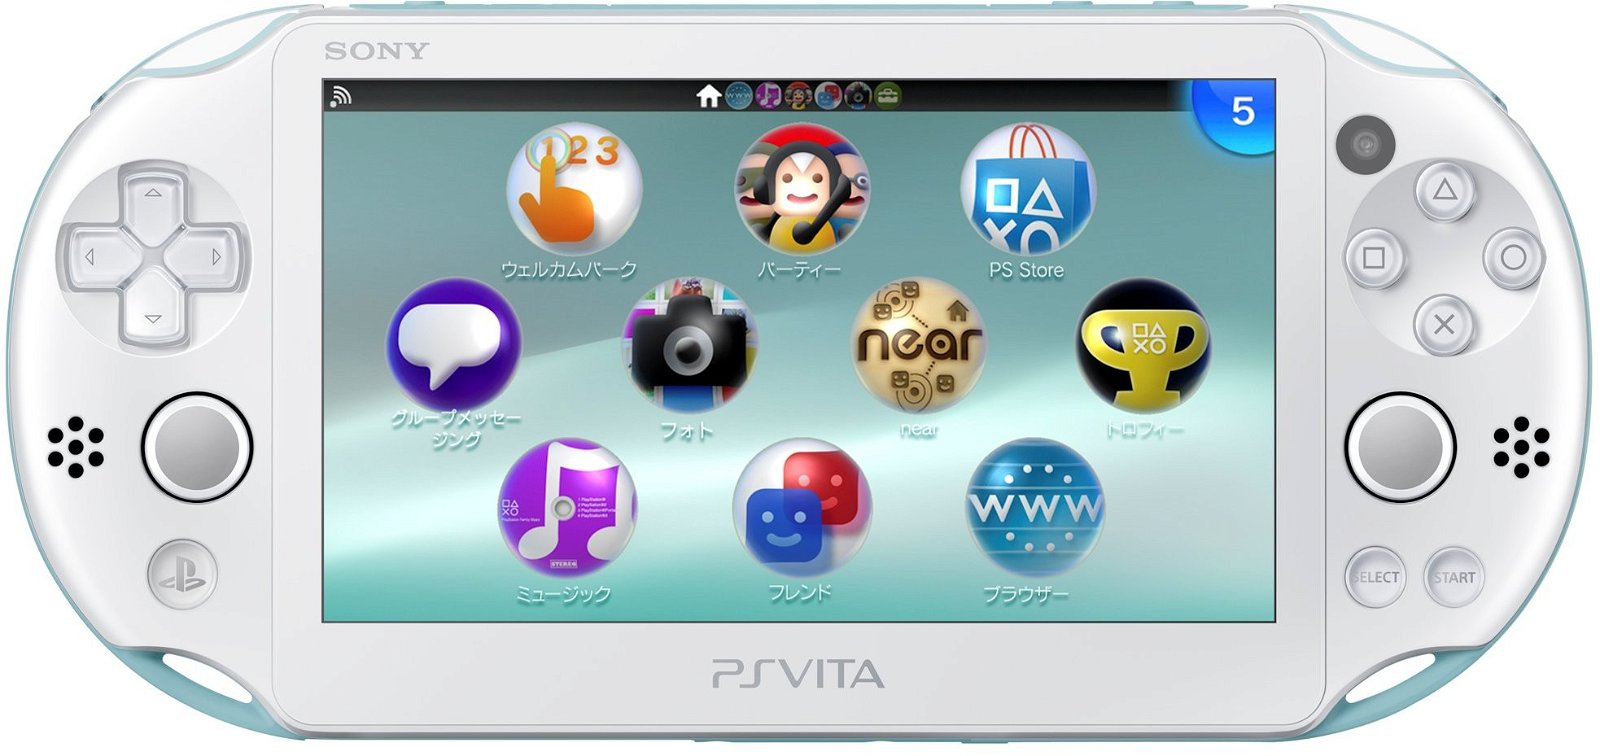 PS Vita 2, si vocifera del ritorno di Sony alle console portatili